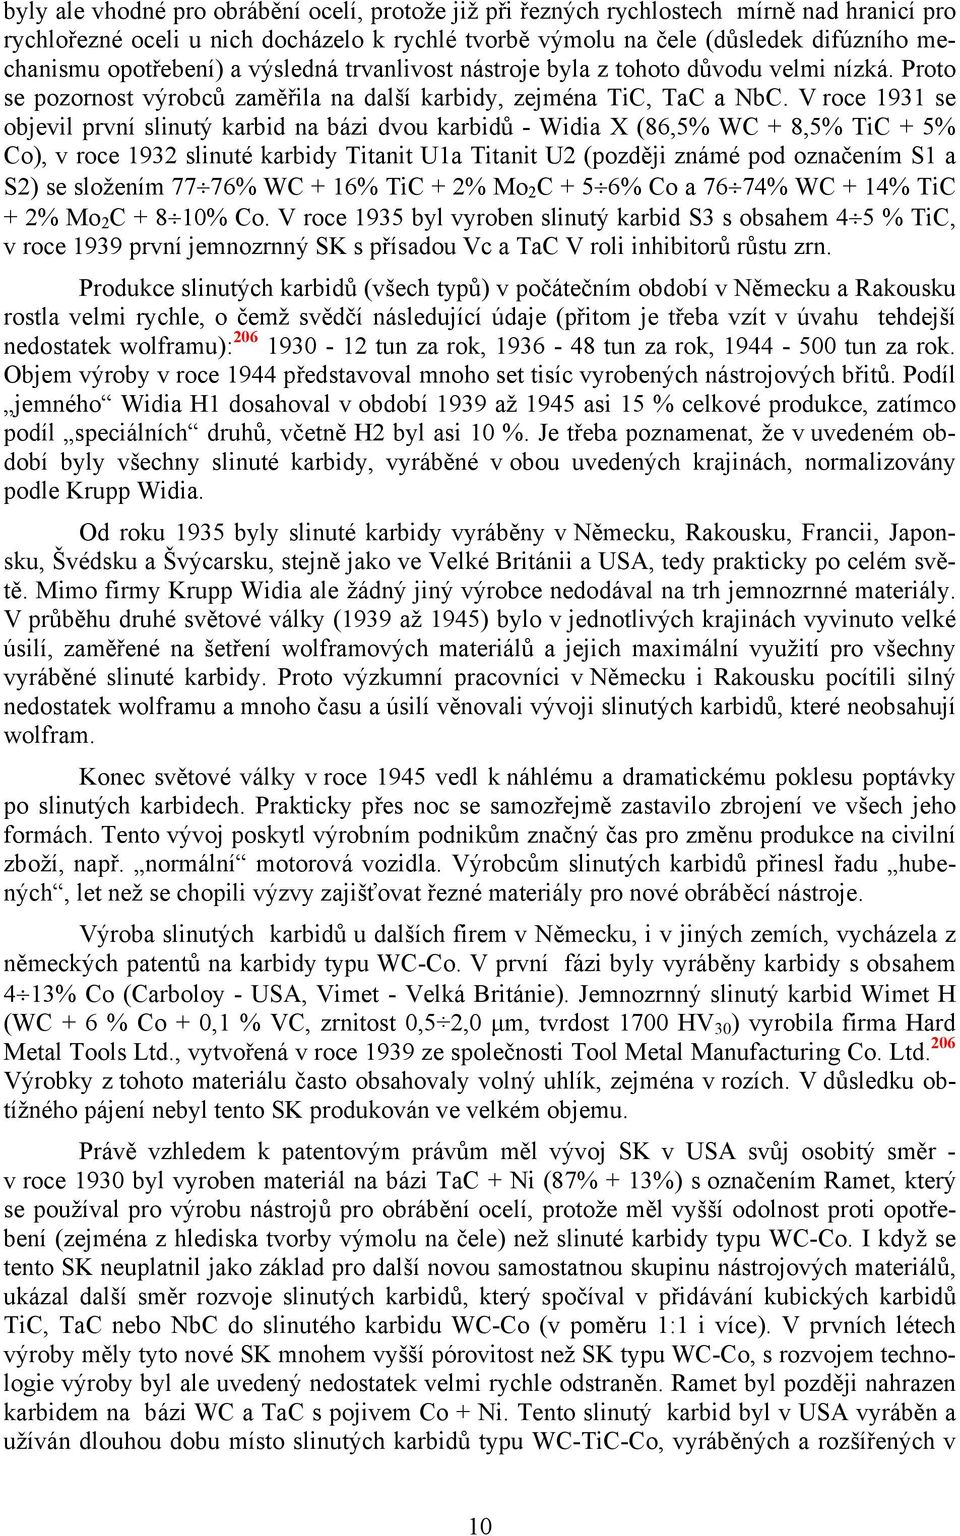 V roce 1931 se objevil první slinutý karbid na bázi dvou karbidů - Widia X (86,5% WC + 8,5% TiC + 5% Co), v roce 1932 slinuté karbidy Titanit U1a Titanit U2 (později známé pod označením S1 a S2) se